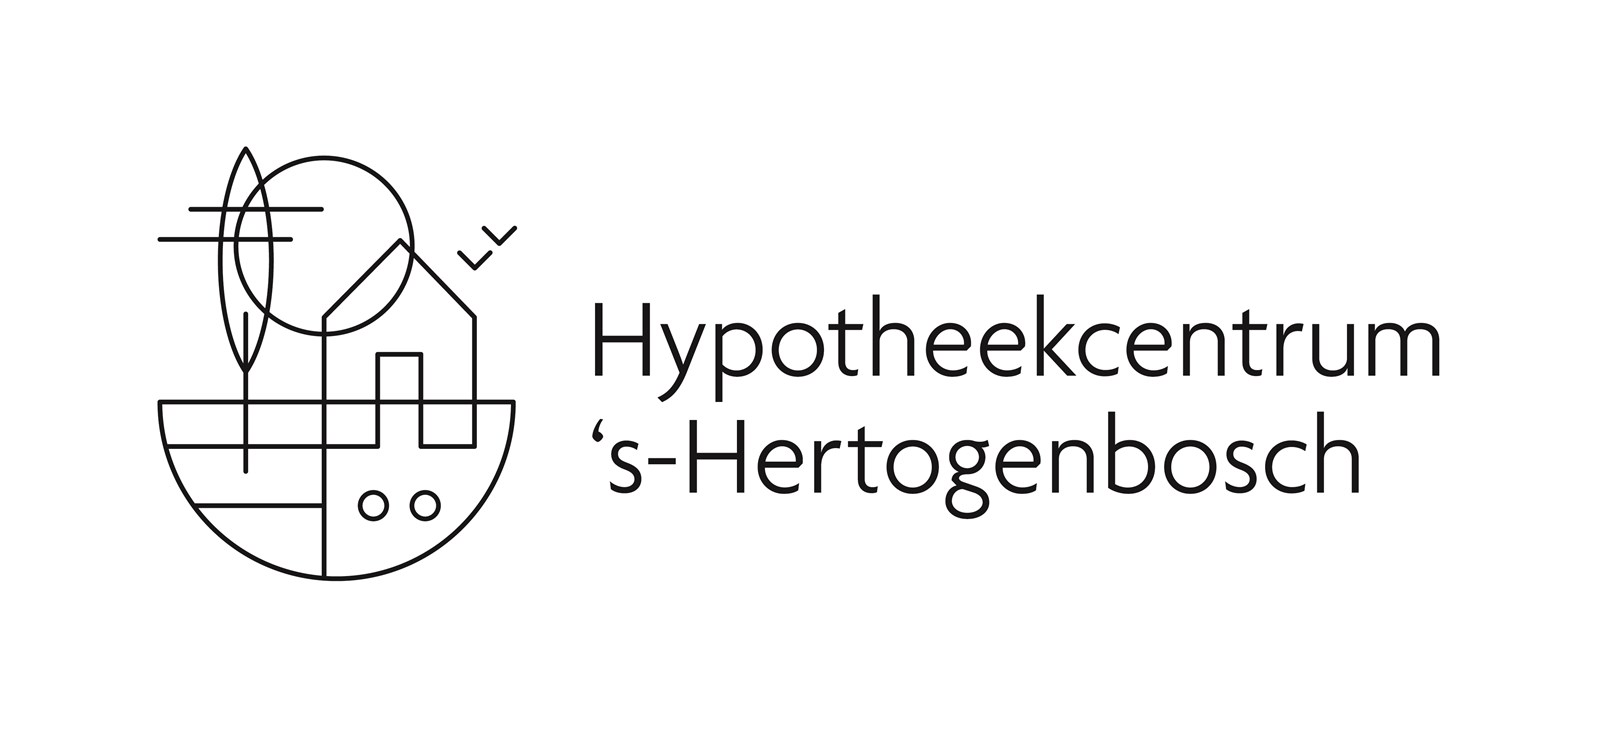 Afbeelding van Hypotheekcentrum 's-Hertogenbosch